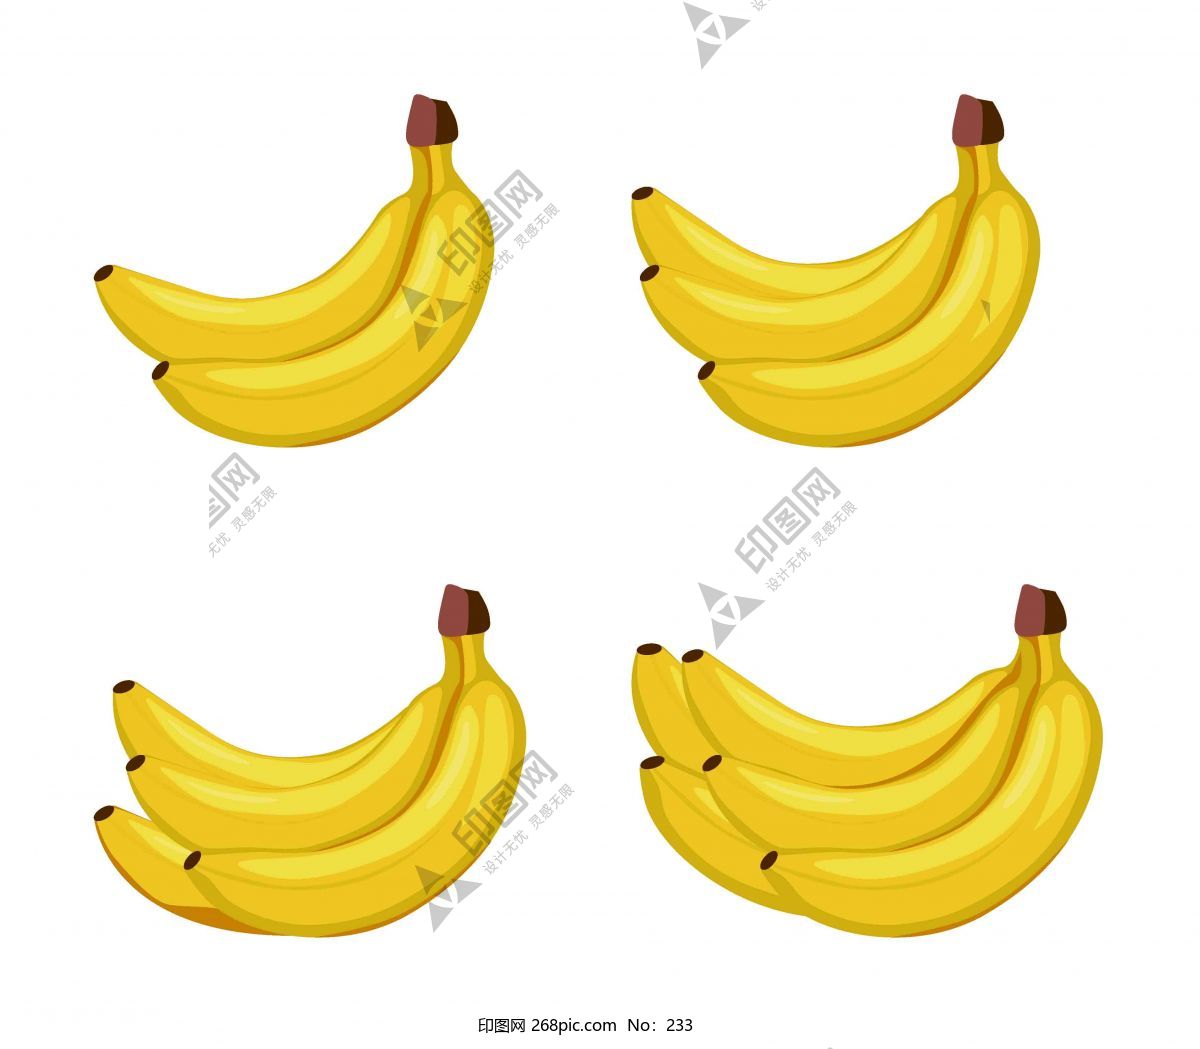 香蕉,水果,黄色,新鲜,南方水果,设计,